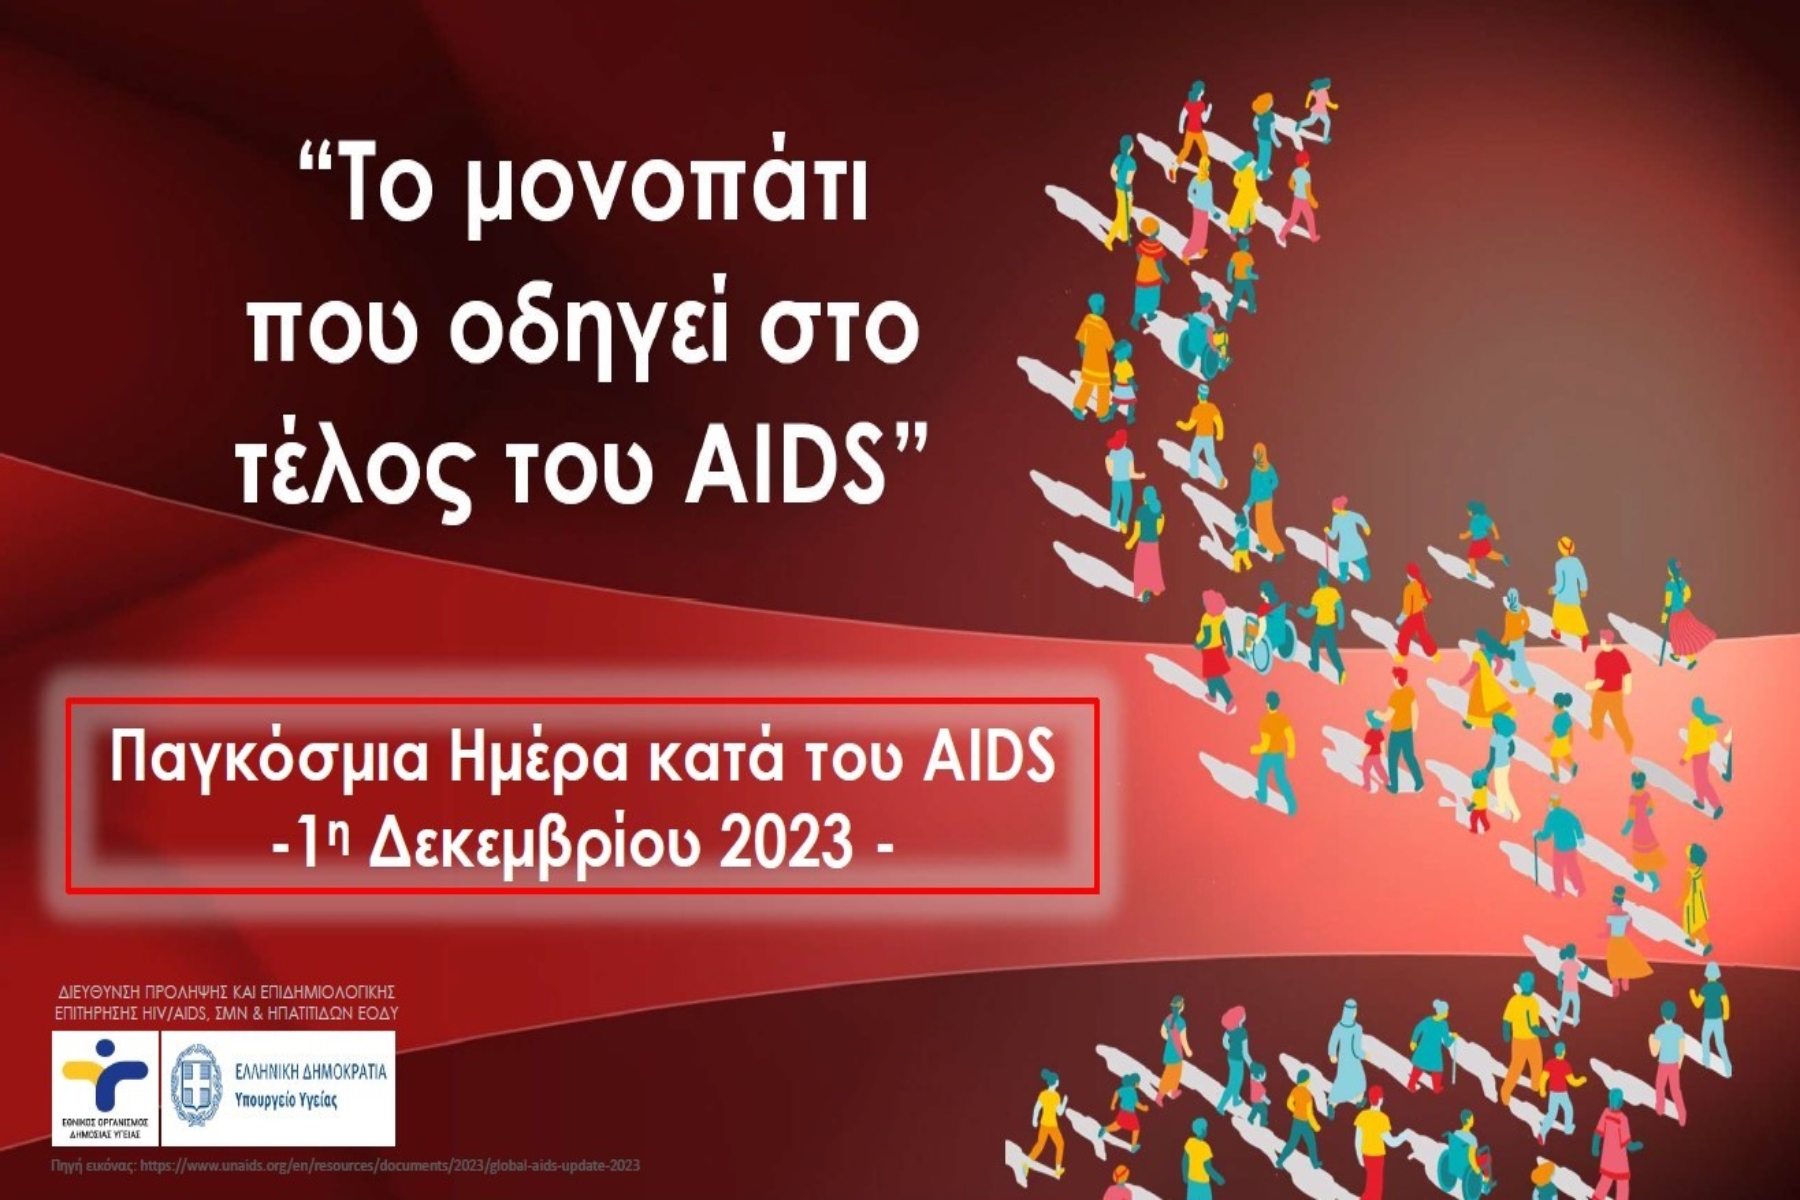 1η Δεκεμβρίου 2023 – Παγκόσμια Ημέρα κατά του AIDS